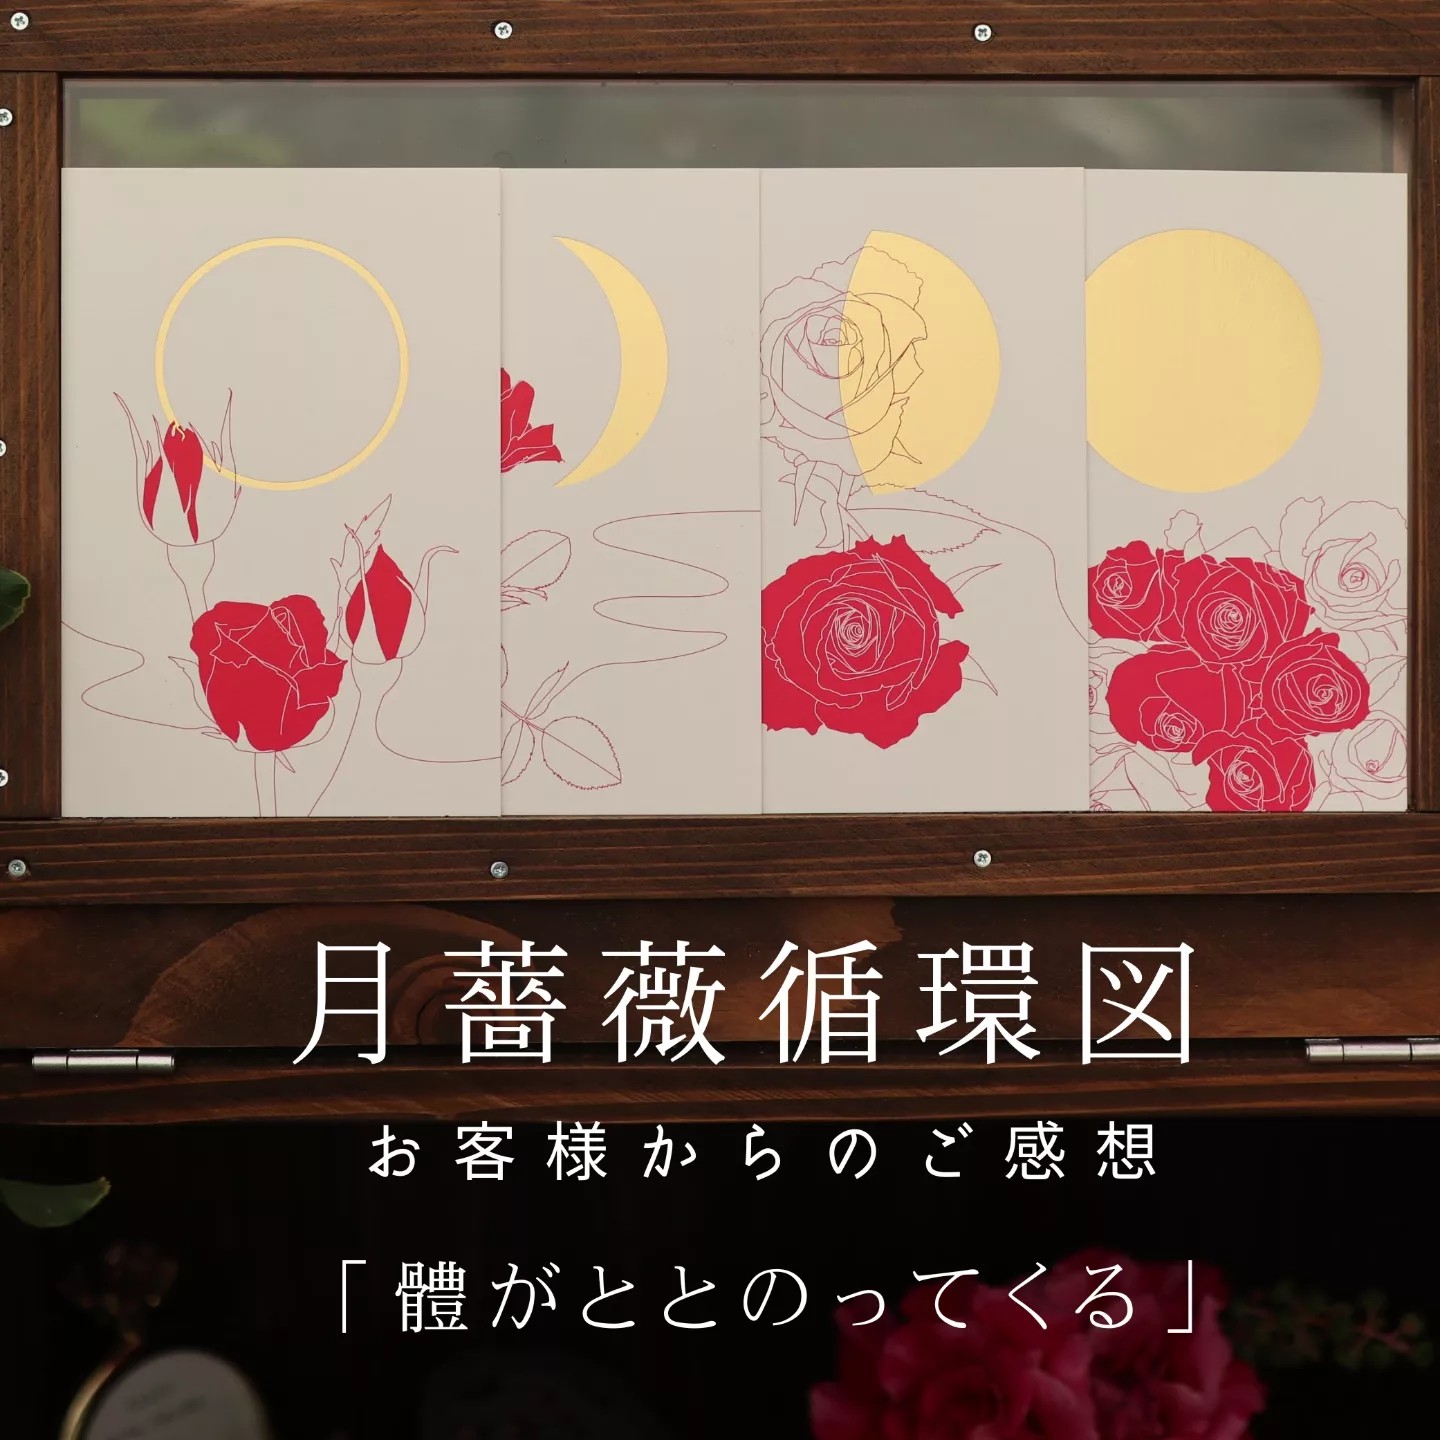 お客様からのご感想月薔薇循環図～お客様からのご感想～東京都練馬区・Dさまより